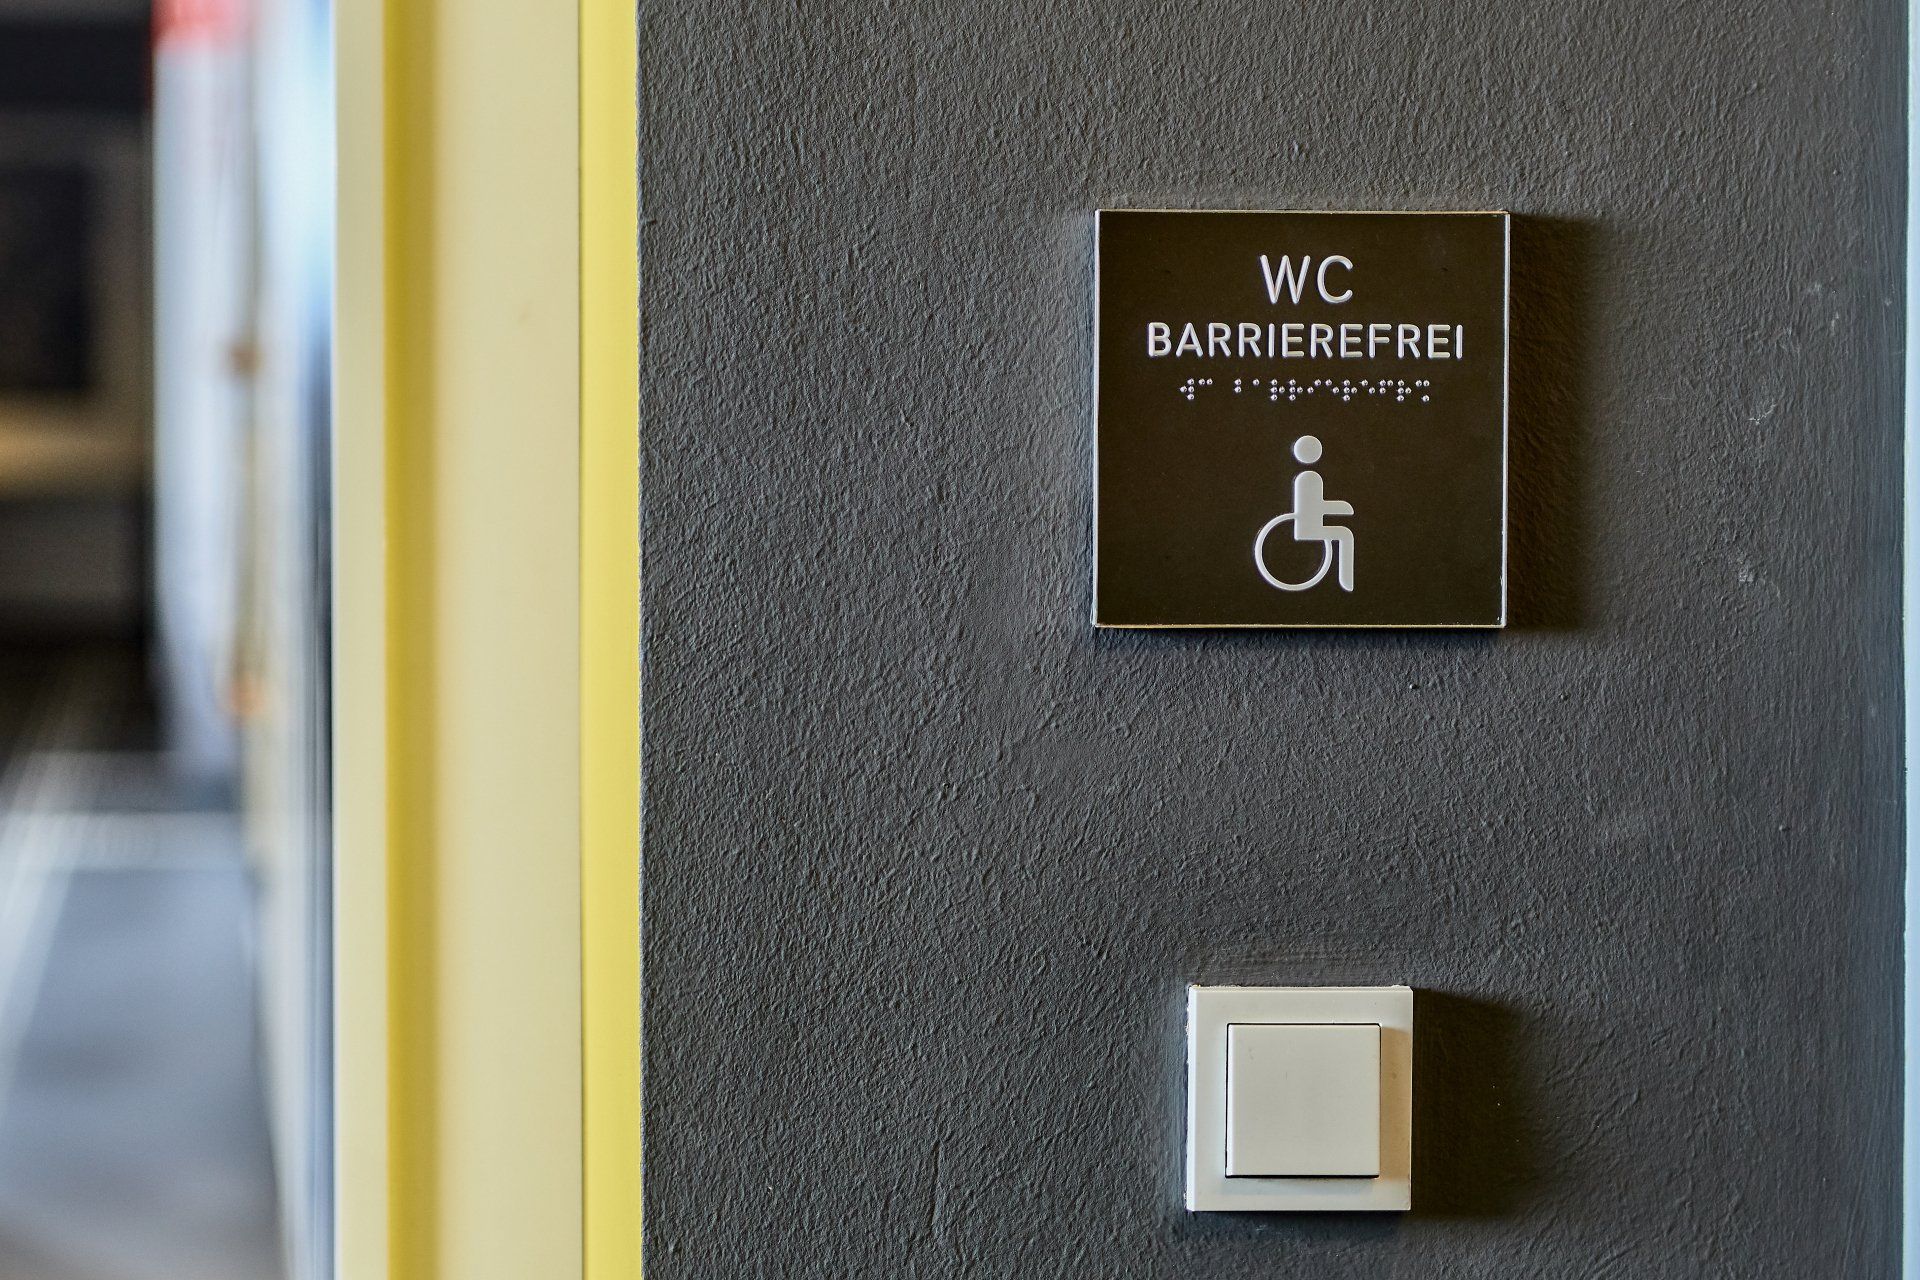 Dieses Bild zeigt ein taktil wahrnehmbares Wandschild für ein barrierefreies WC, gekennzeichnet durch den Text 'WC Barrierefrei' in klar lesbarer Schrift und Braille-Übersetzung. Unterhalb des Textes ist das international anerkannte Piktogramm für Rollstuhlfahrer abgebildet, was die Zugänglichkeit für Menschen mit Mobilitätseinschränkungen hervorhebt. Das Schild unterstützt die Inklusion und Orientierung in öffentlichen Einrichtungen, indem es auch für blinde und sehbehinderte Menschen erkennbar ist.